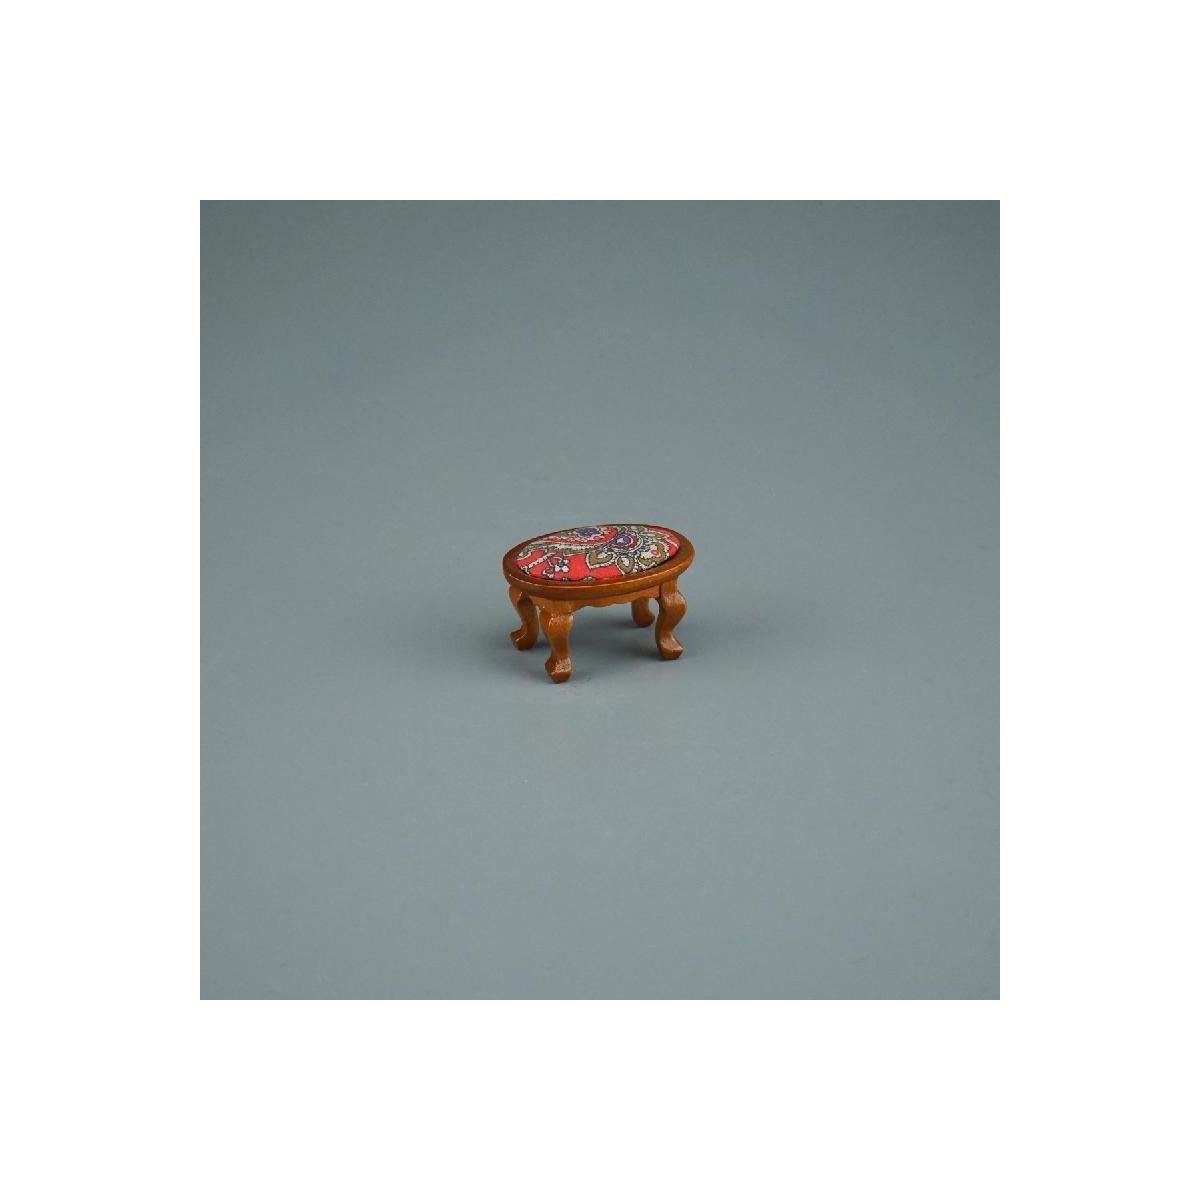 Reutter Porzellan Dekofigur 001.862/4 - Gepolsterter Hocker rot, Miniatur im Maßstab 1:12 | Dekofiguren